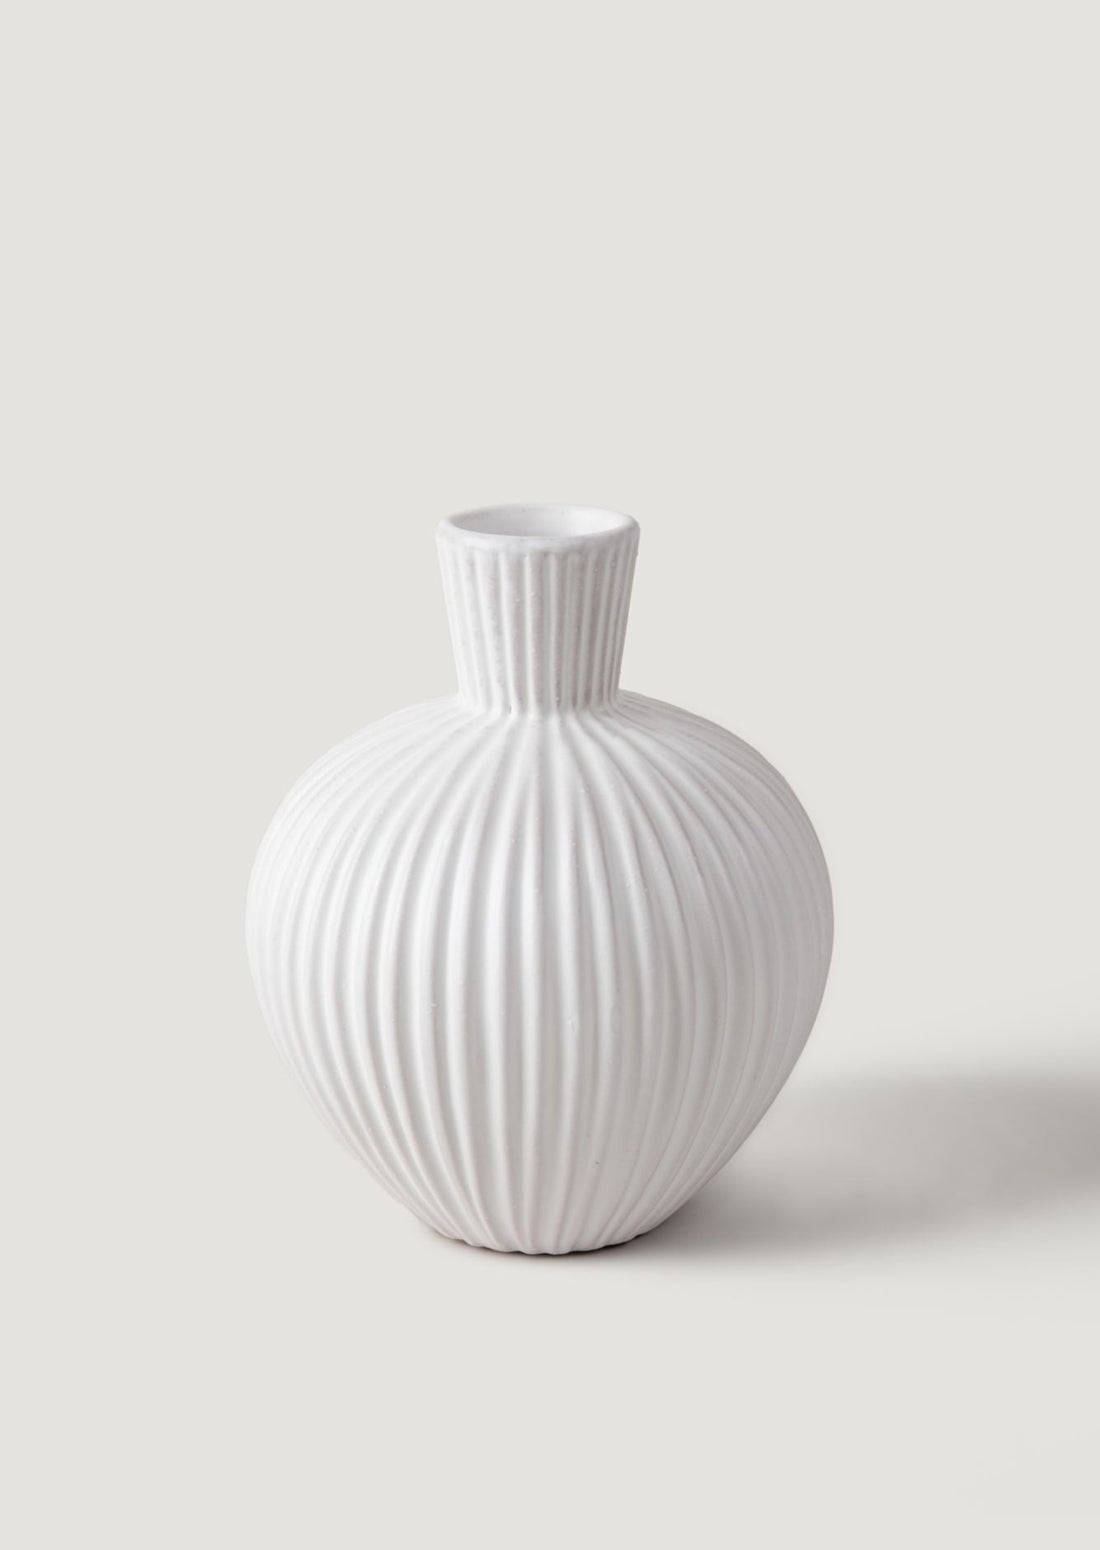 Handmade Terra Cotta Gourd-Shaped Vase in White